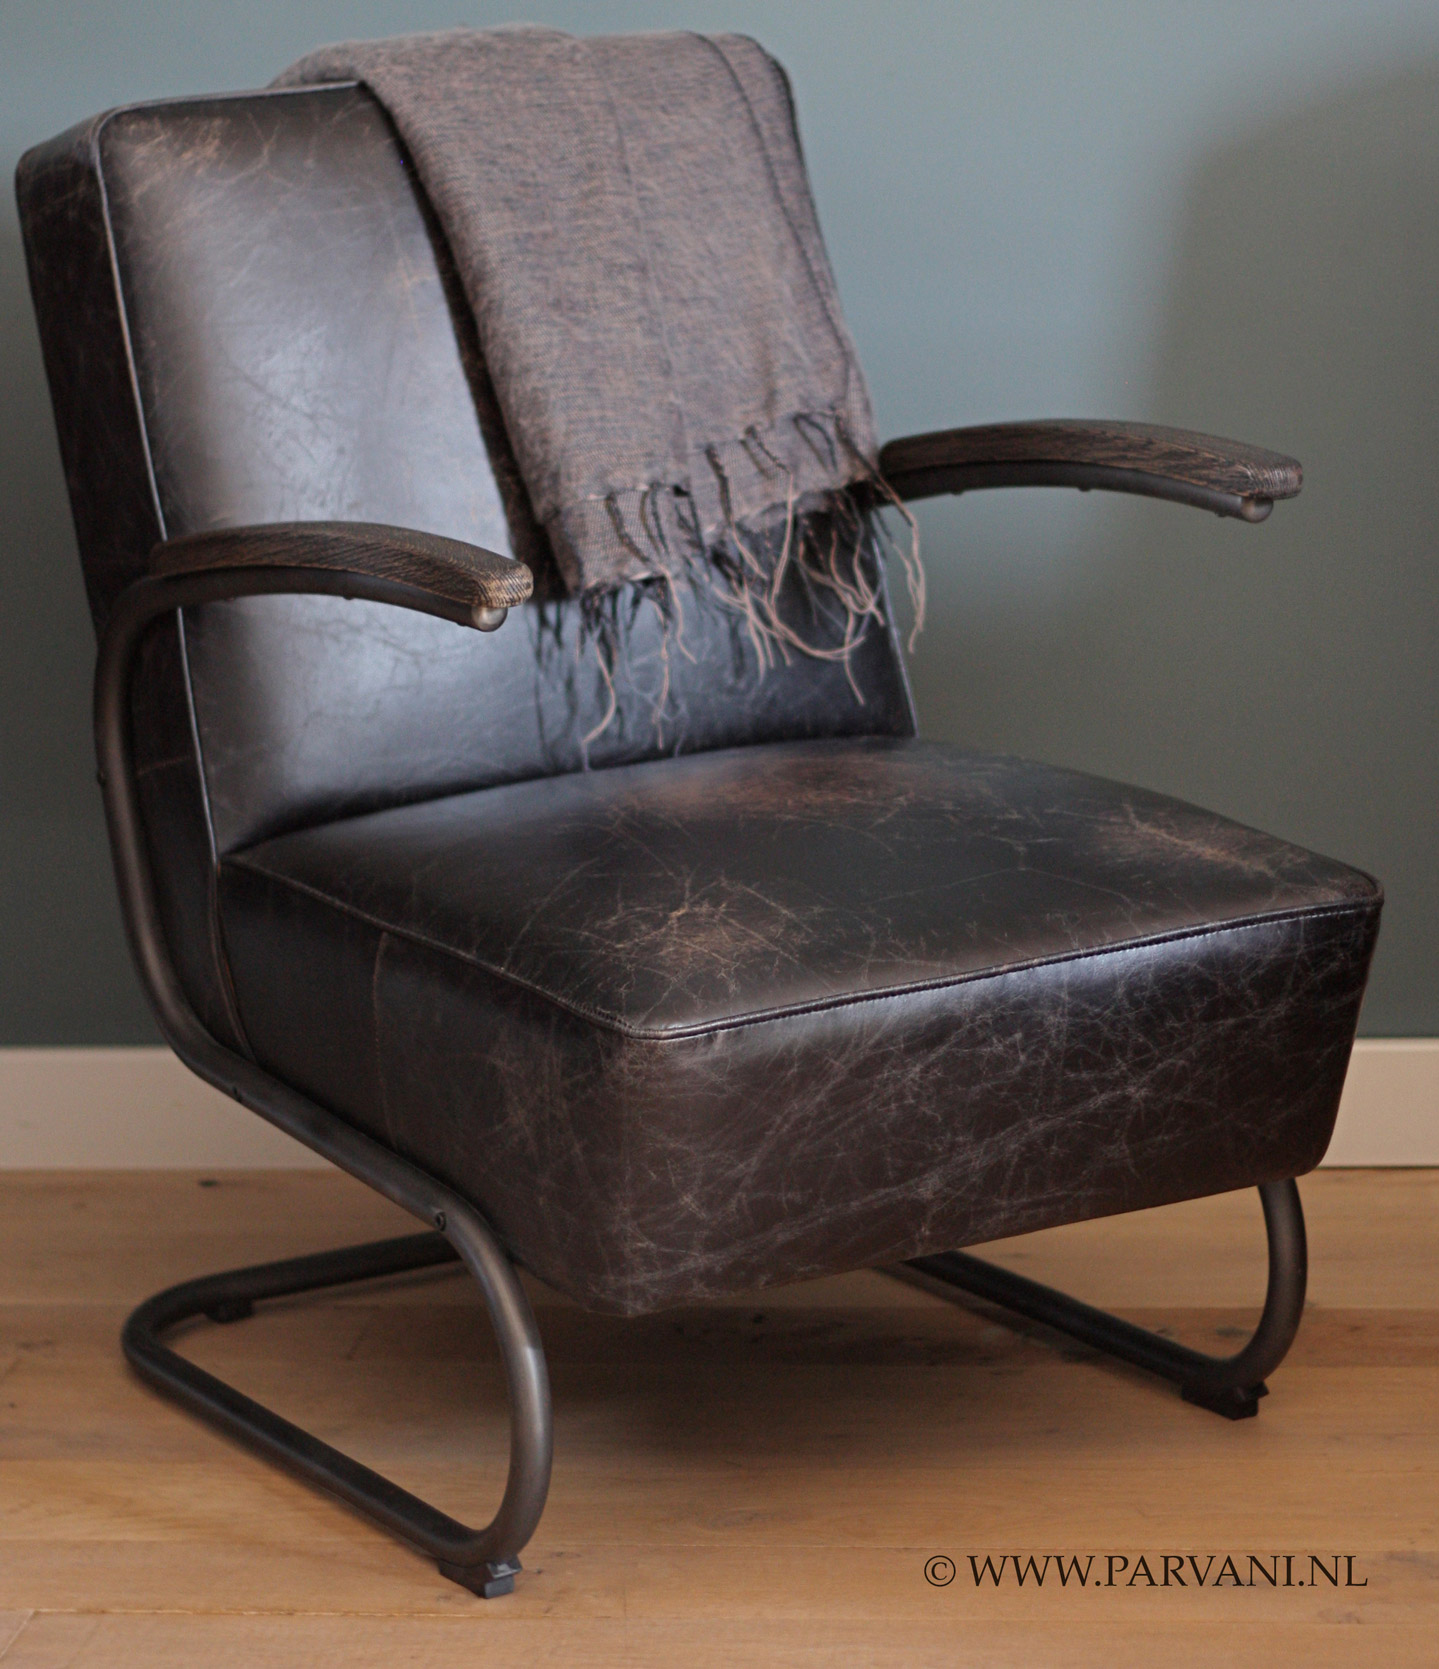 Machtigen Terugspoelen Jood Vintage-leren-fauteuil-stoel-robuust | Parvani